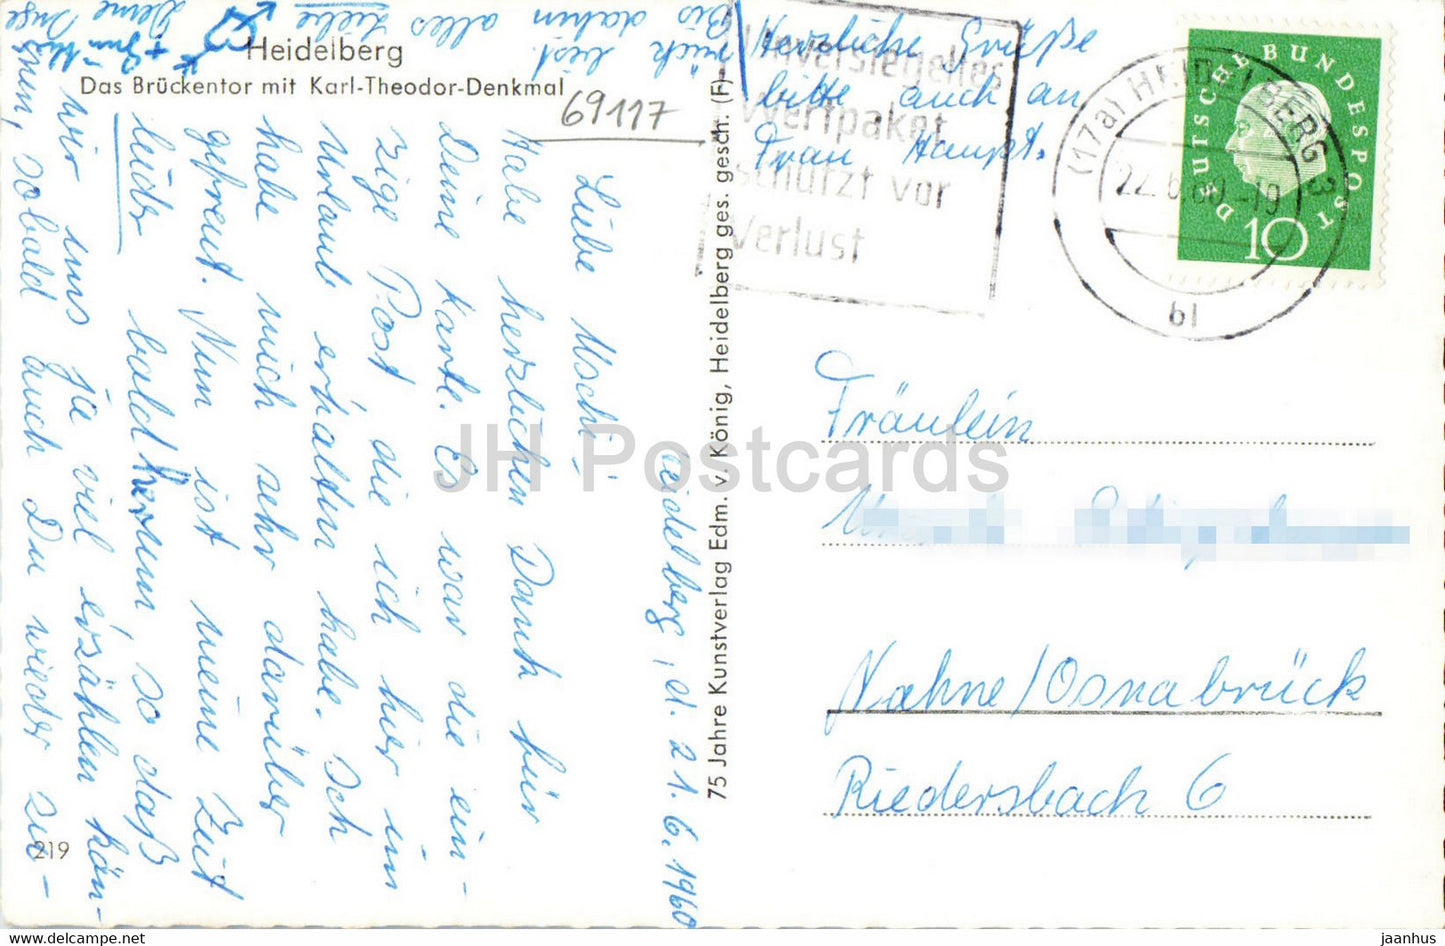 Heidelberg - Das Bruckentor mit Karl Theodor Denkmal - monument - carte postale ancienne - 1960 - Allemagne - utilisé